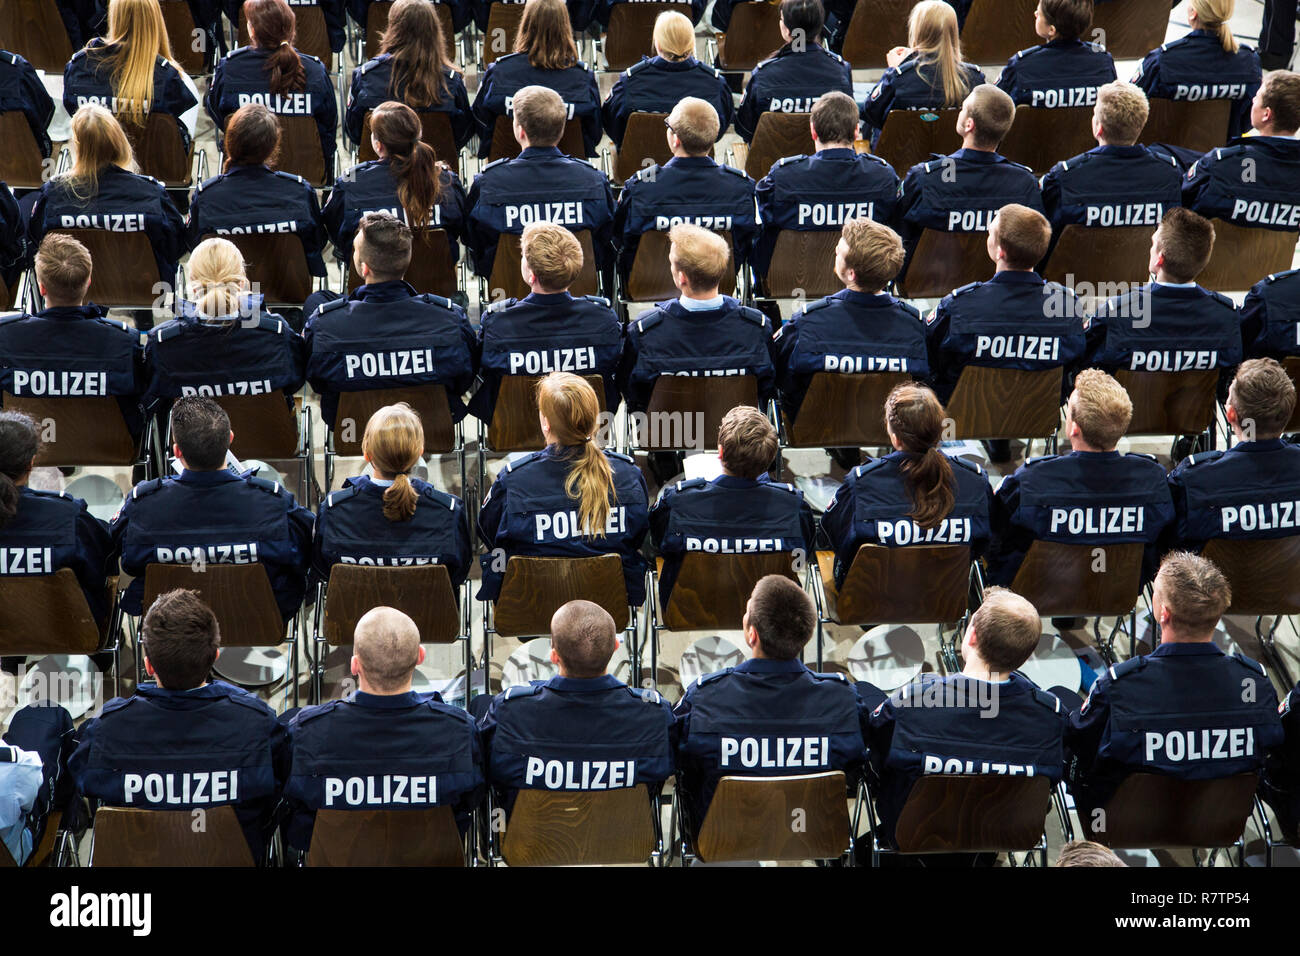 Polizei Kommissar Anwärter, Auszubildende der Polizei NRW oder Der nordrhein-westfaelische Polizei, sitzen auf einer Sitzung in einem Stockfoto